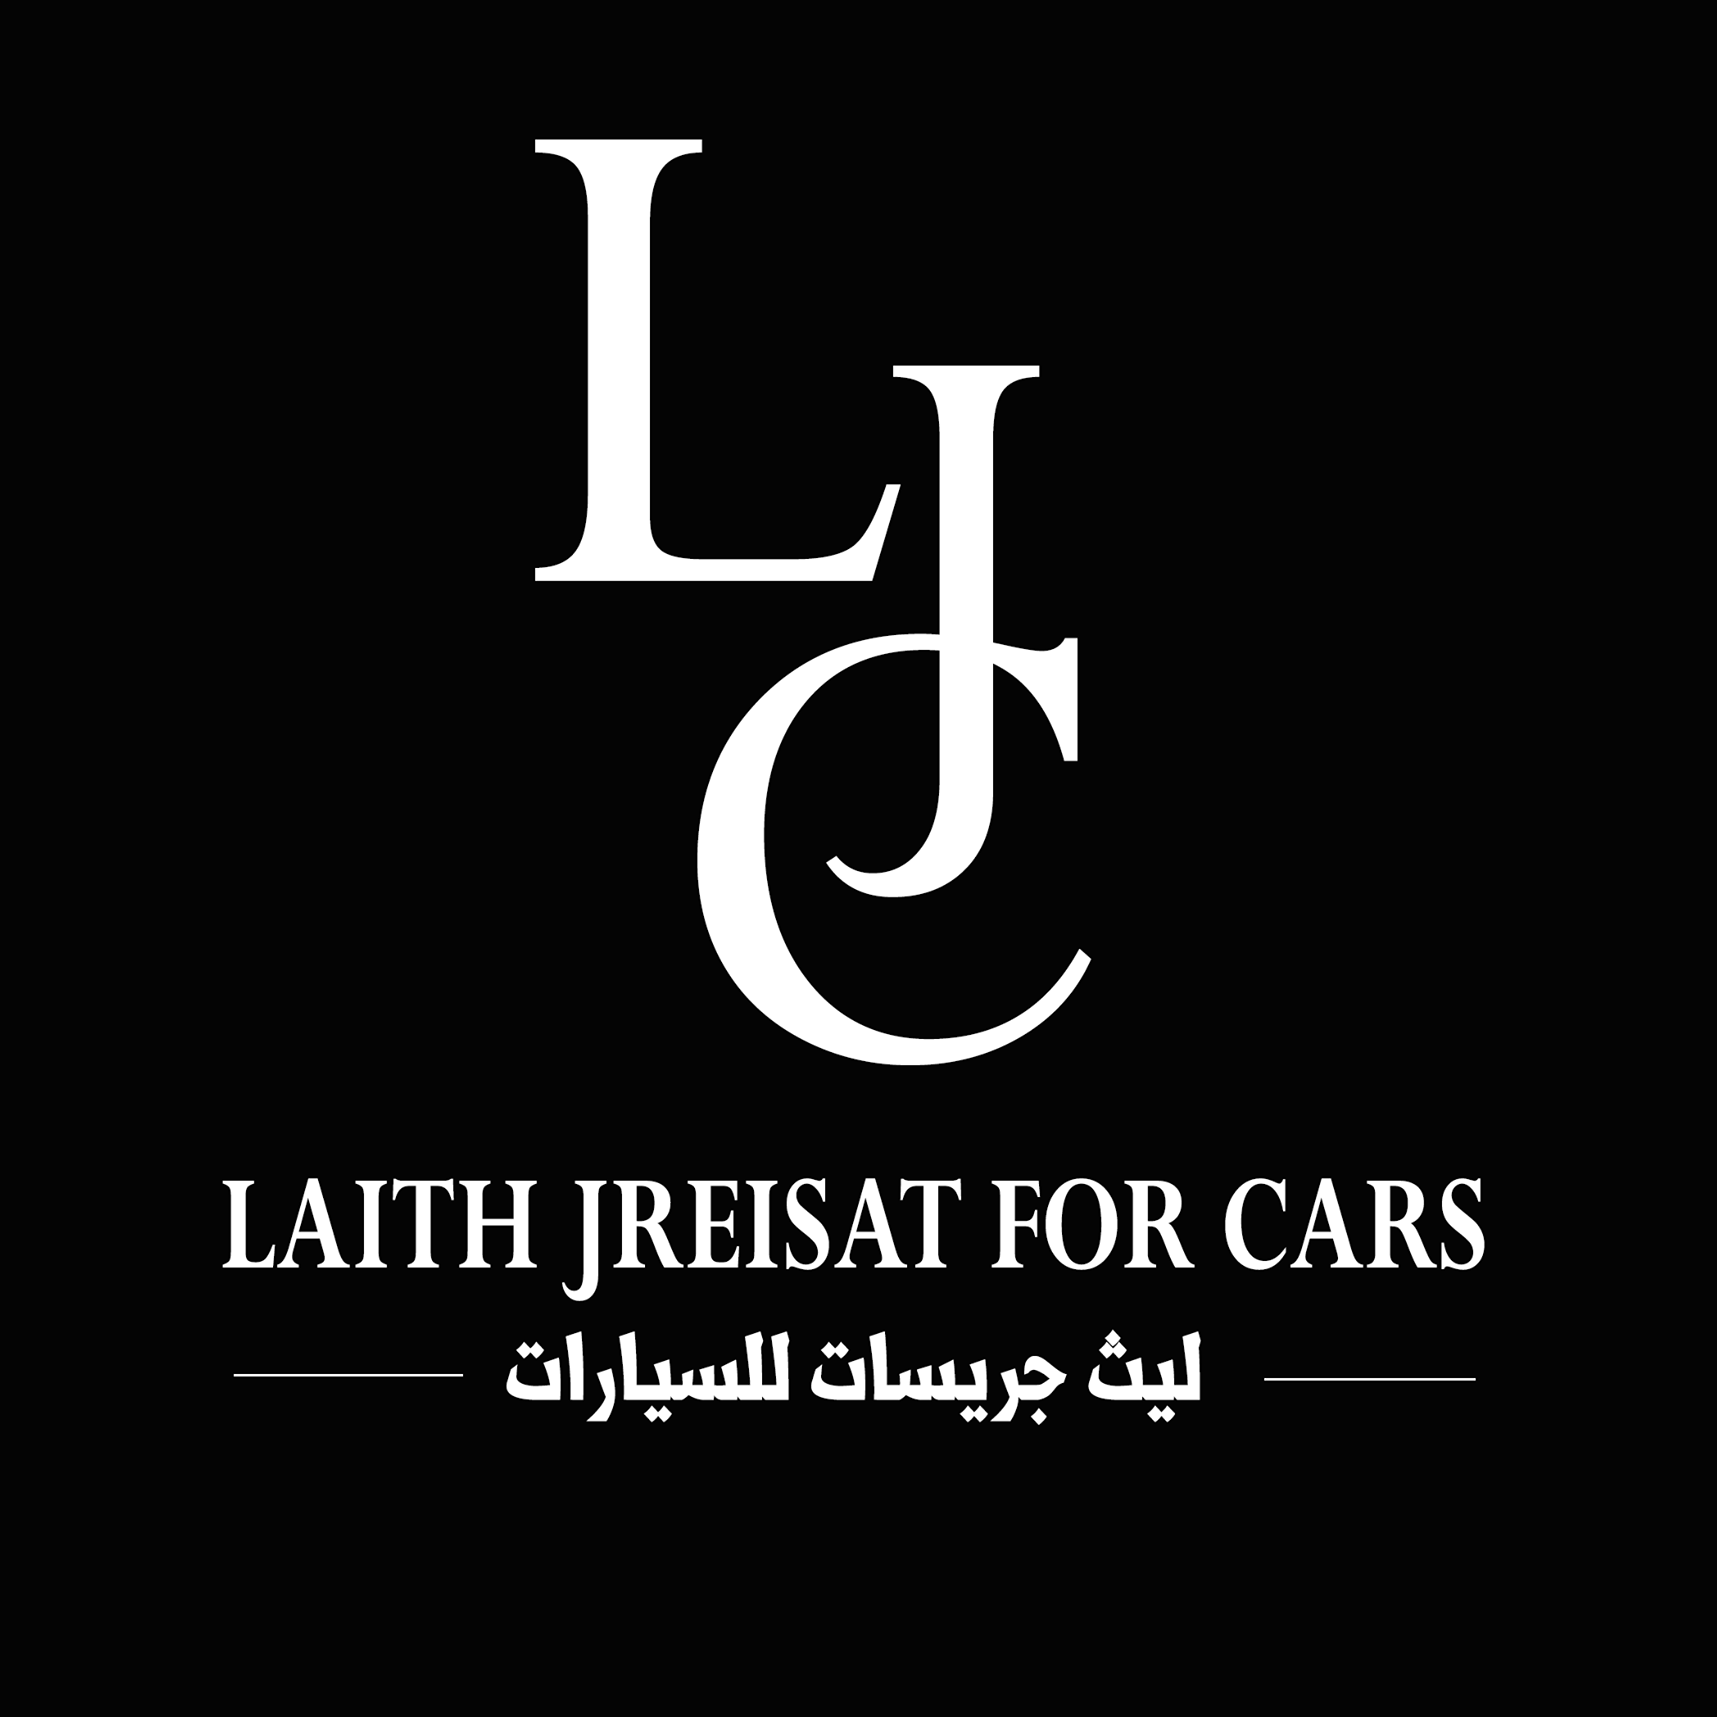 Laith Jreisat For Cars